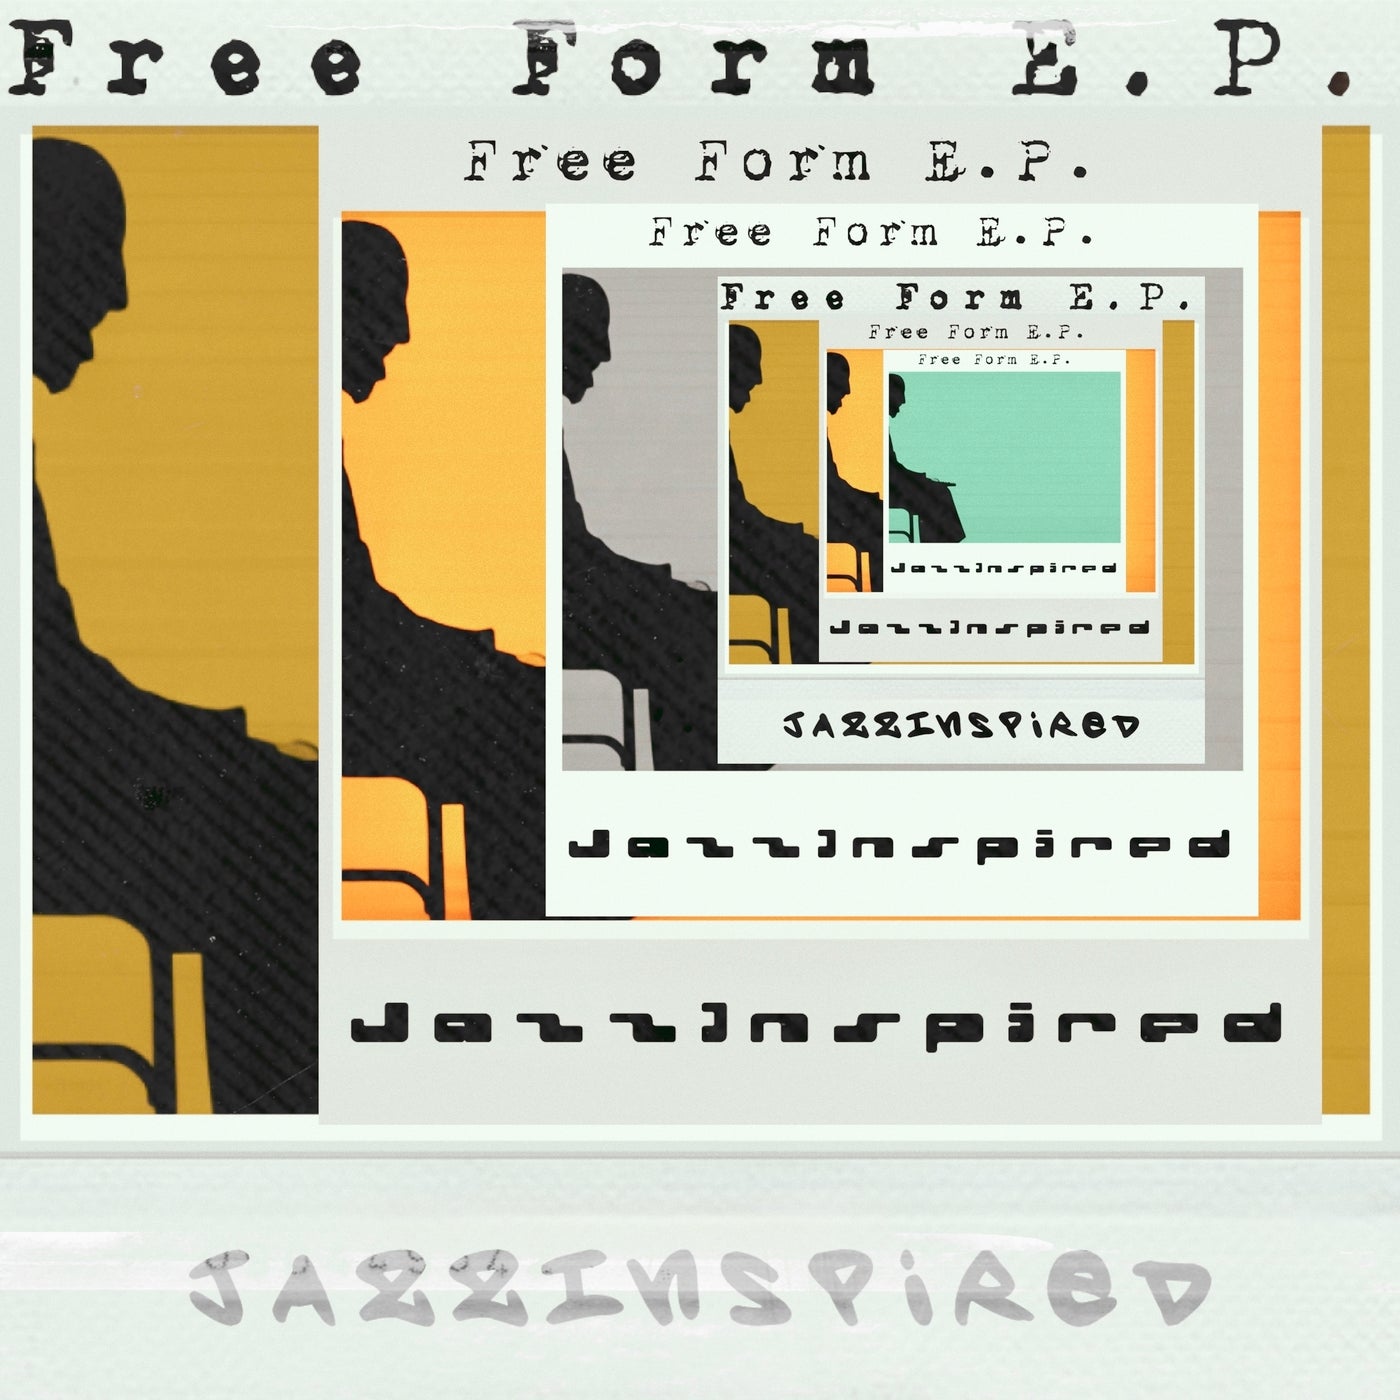 Free Form E.P.